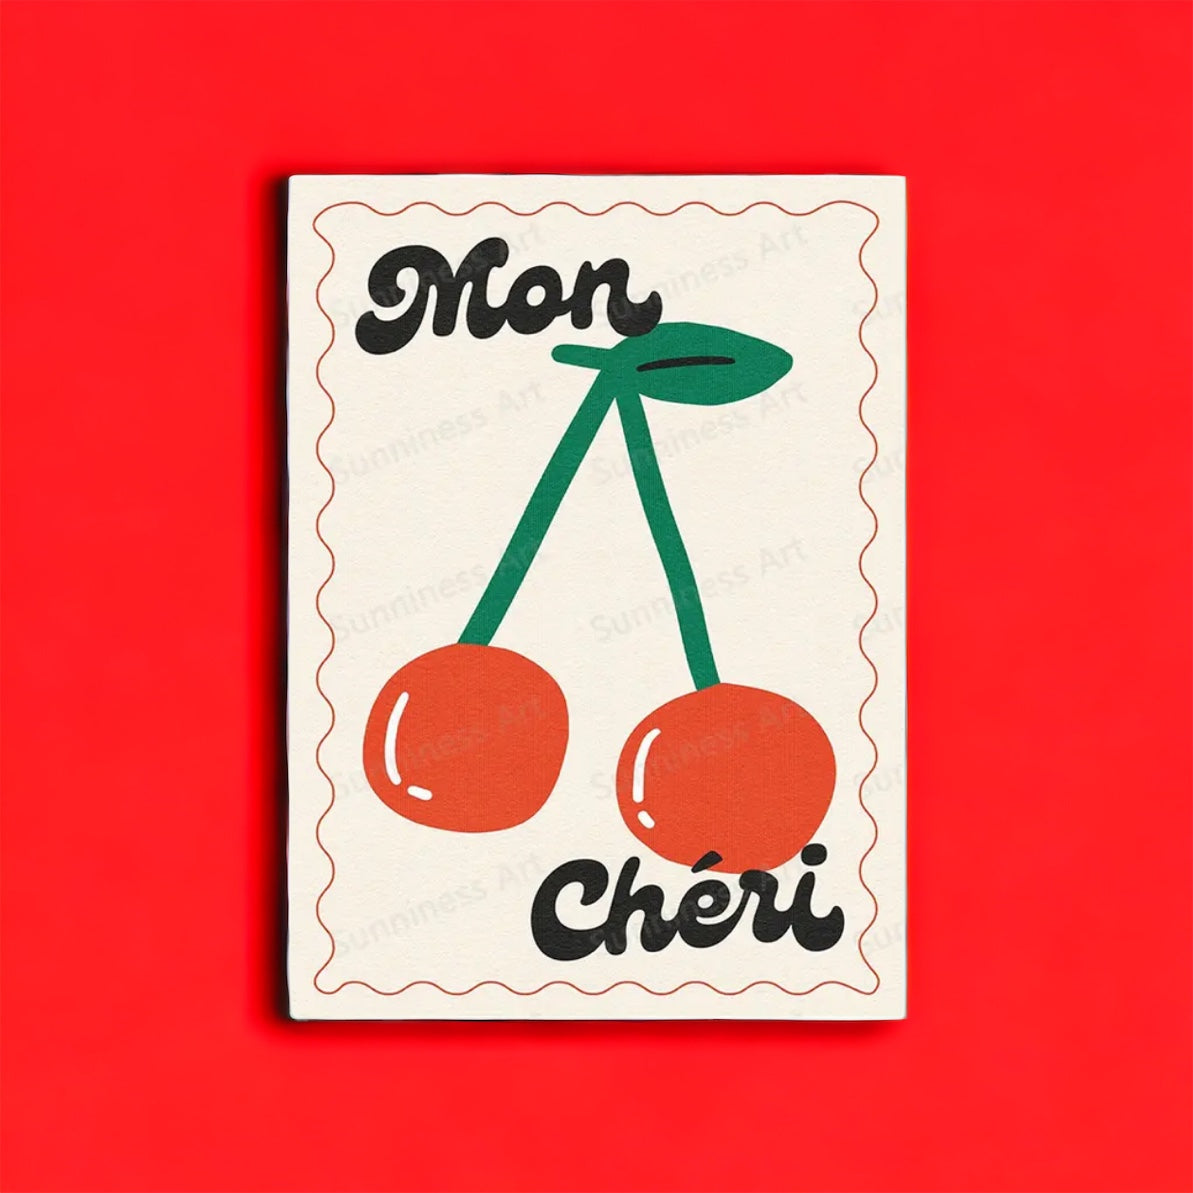 “Mon Cheri” Art Print